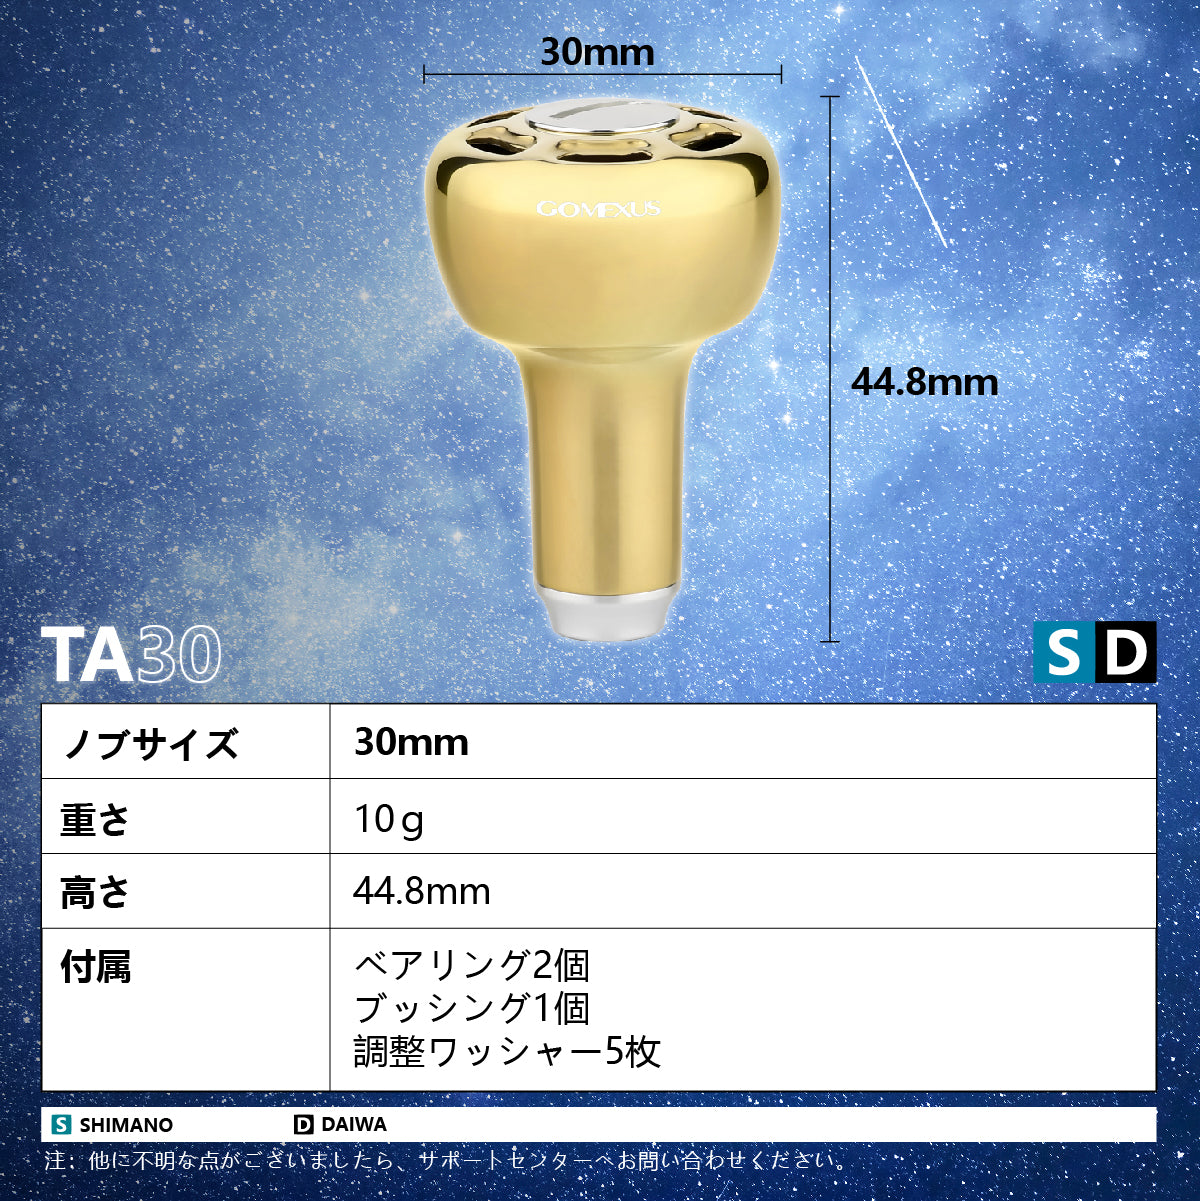 (국내배송)고멕서스 갤럭시 티타늄 핸들노브 30MM TA30 시마노A/다이와S